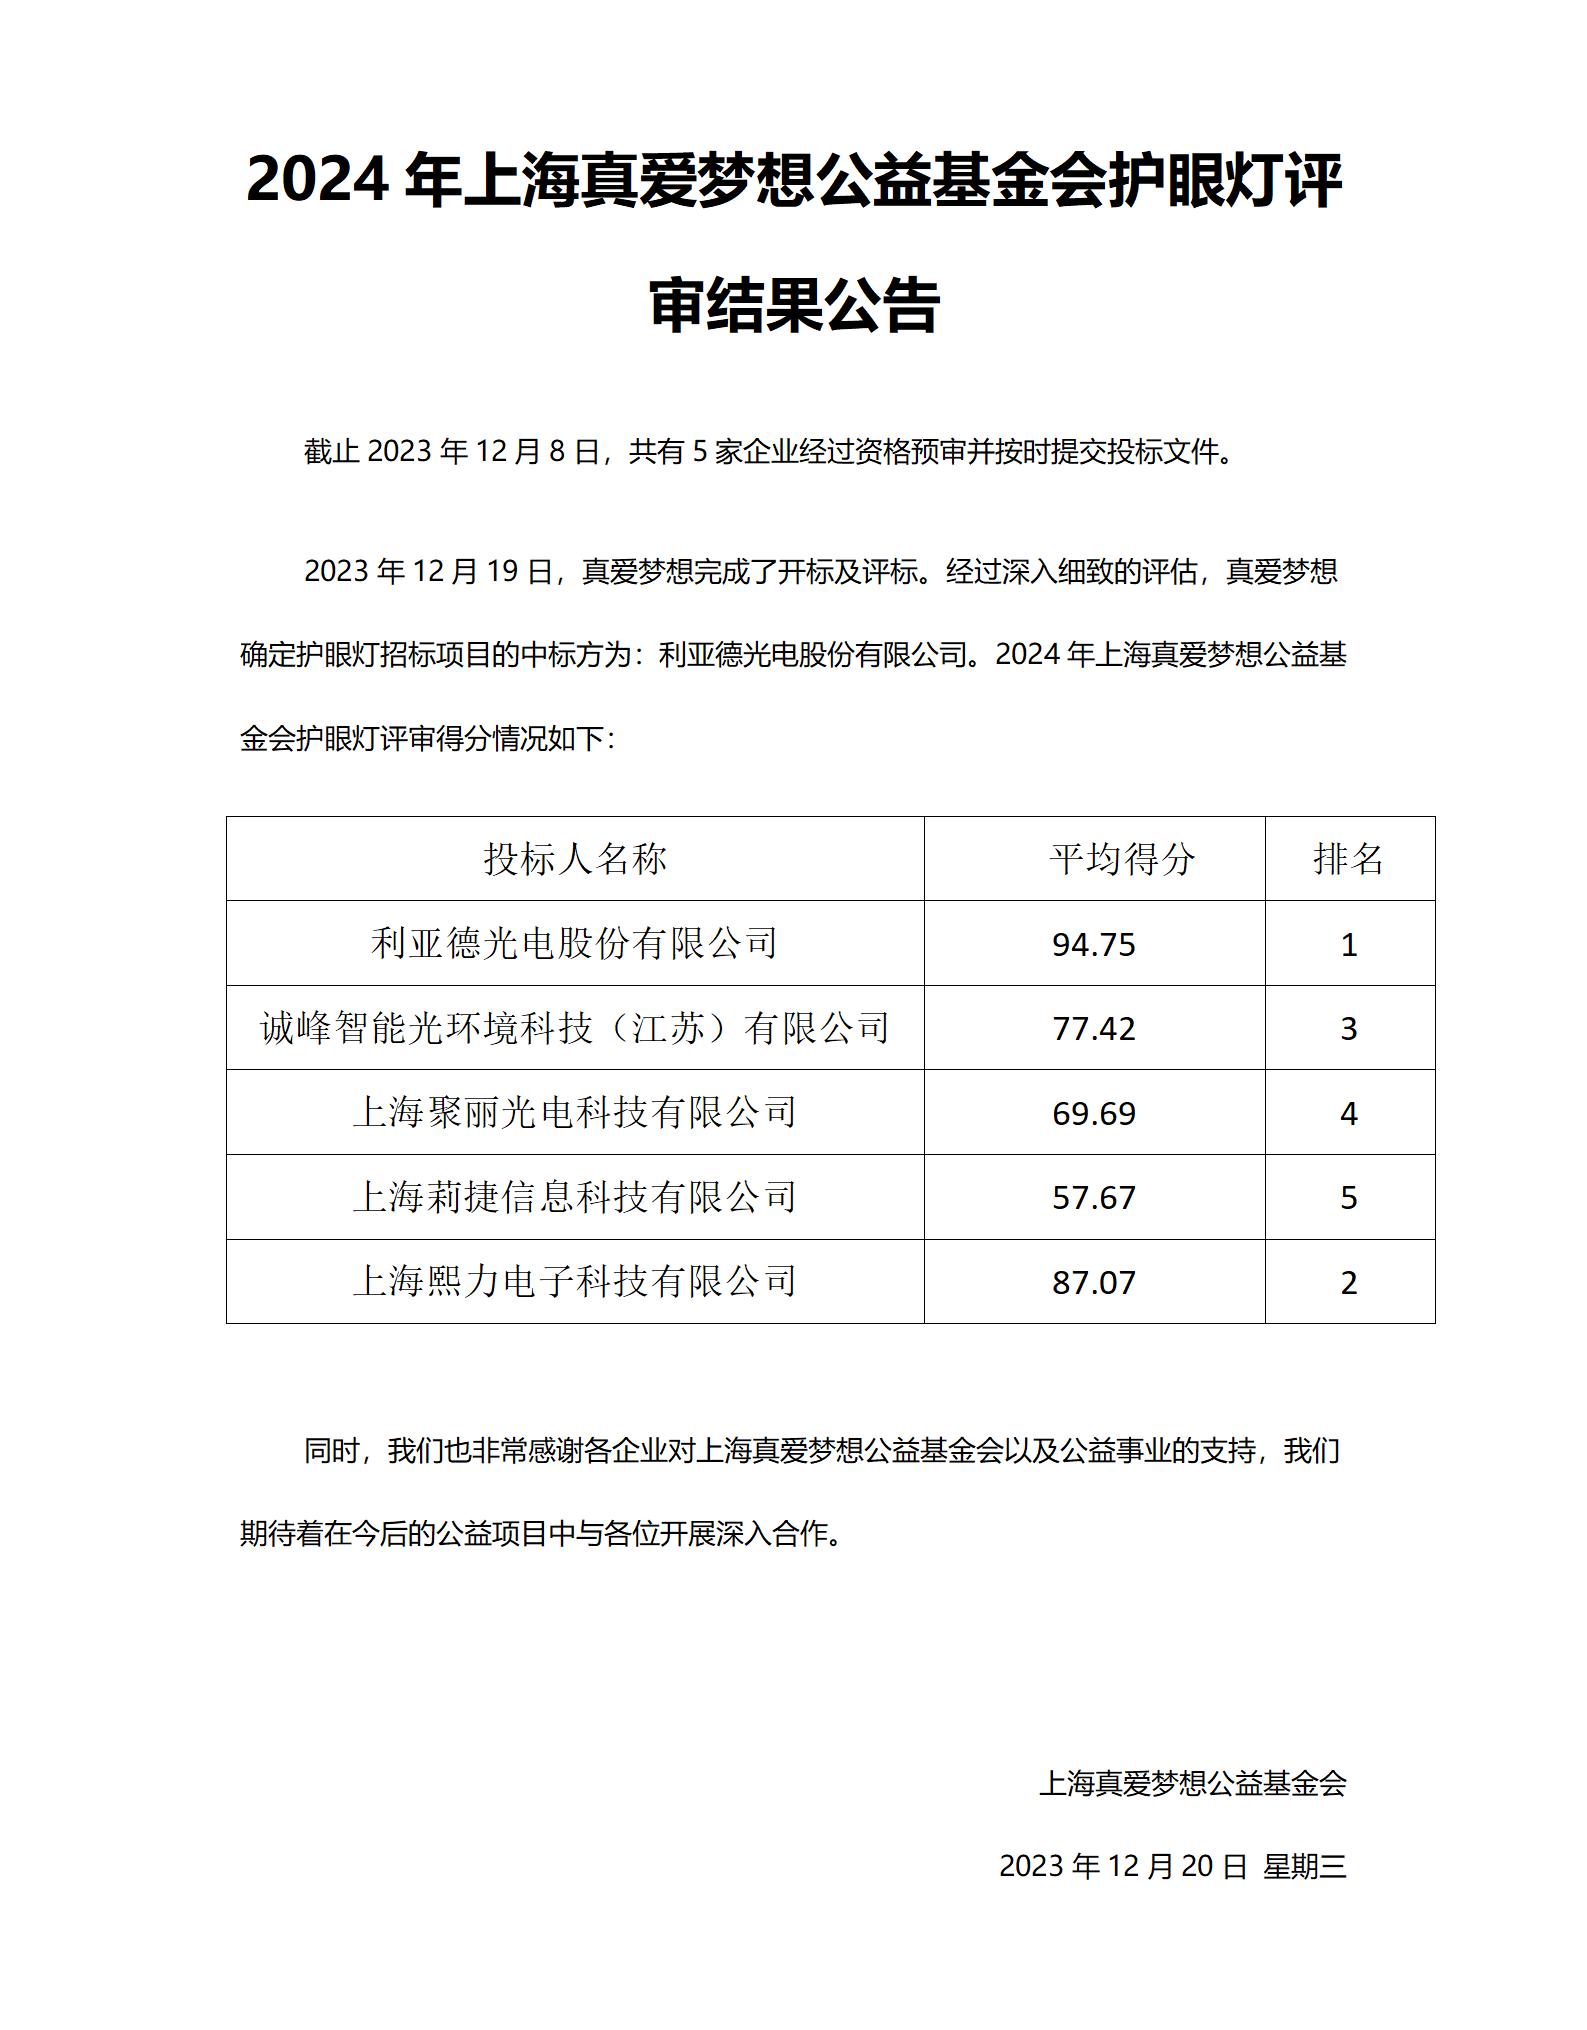 附件2 采购招标结果公告-2024年上海真爱梦想公益基金会护眼灯评标_01